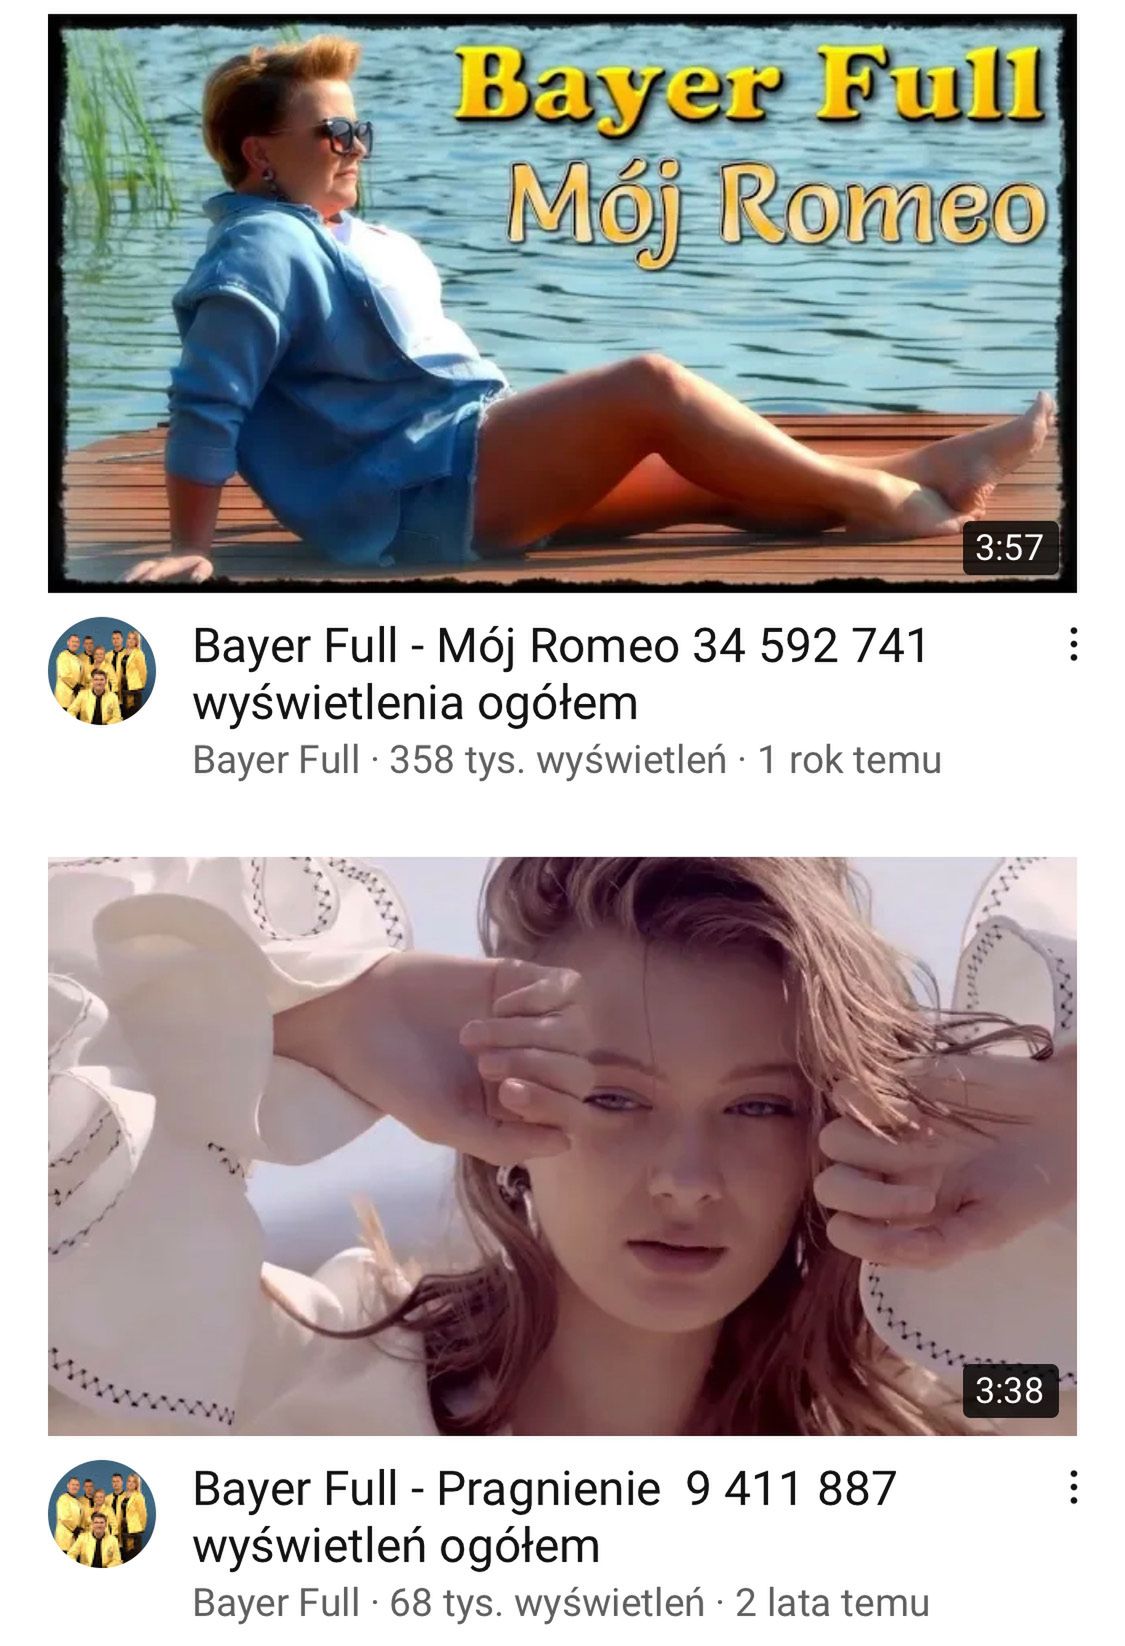 Bayer Full fałszuje liczbę wyświetleń na YouTube